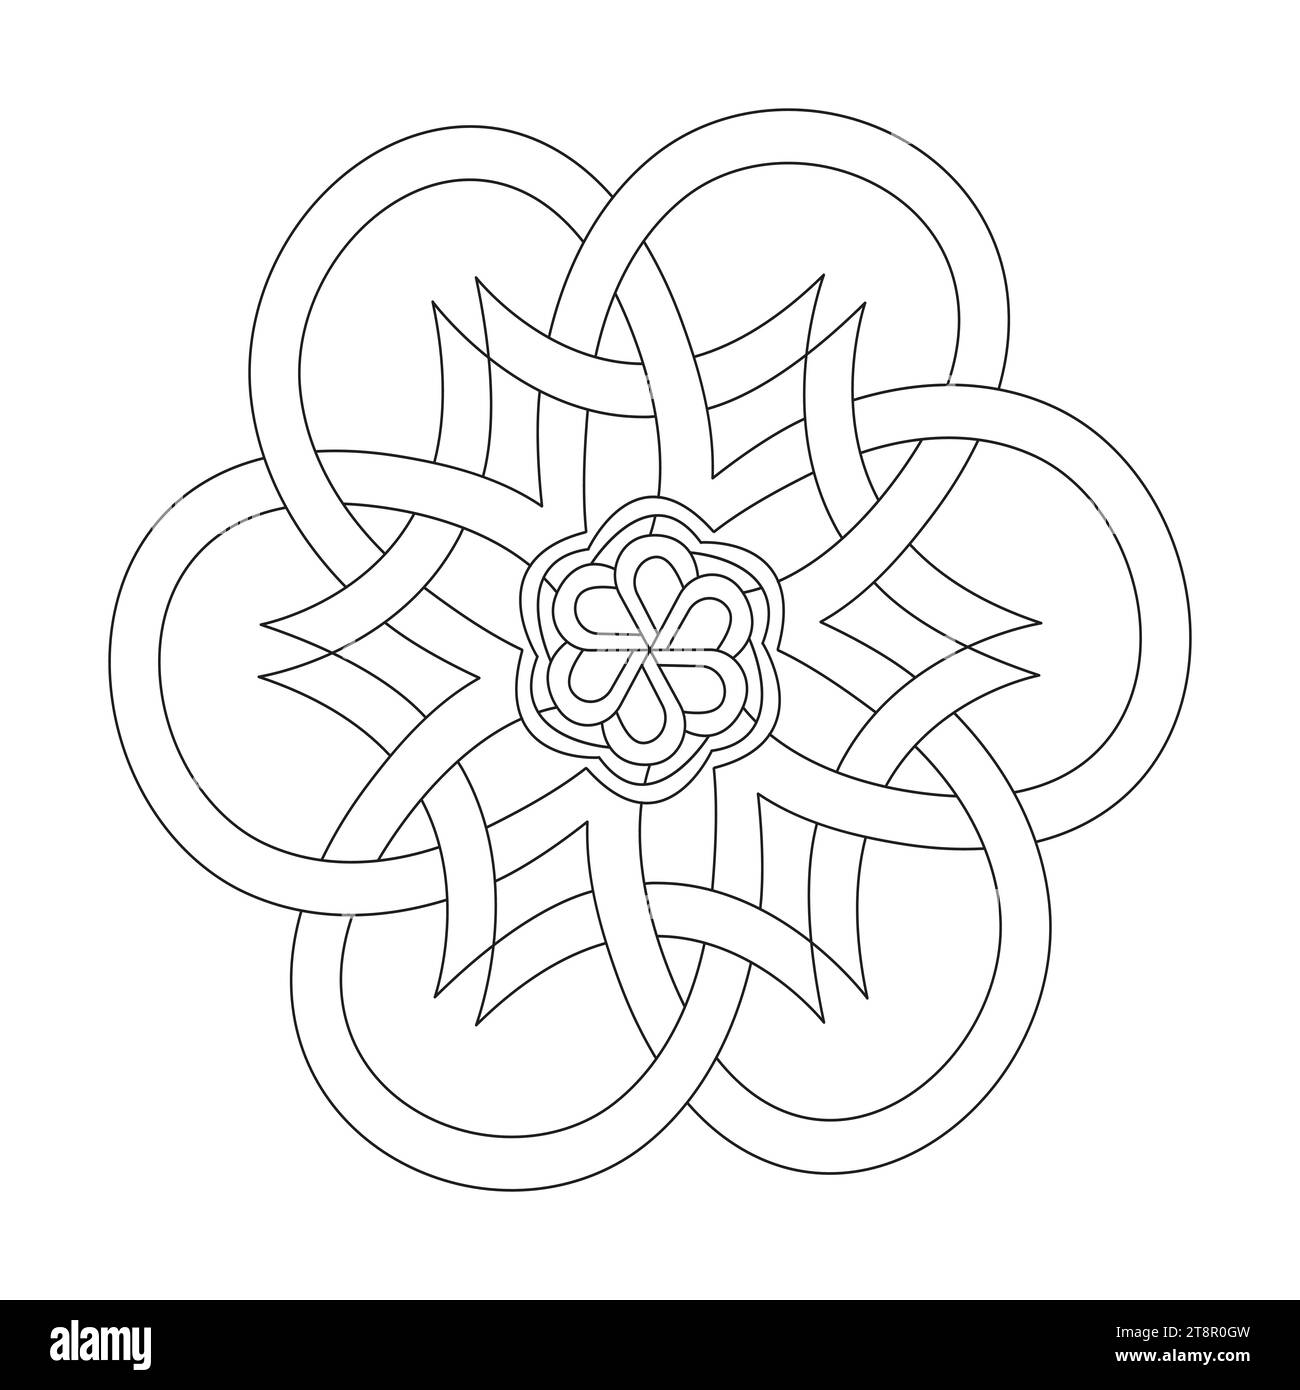 Page de livre de coloriage d'arts numériques celtique mandala pour l'intérieur du livre KDP. Pétales paisibles, capacité à se détendre, expériences cérébrales, Haven harmonieux, paisible Illustration de Vecteur